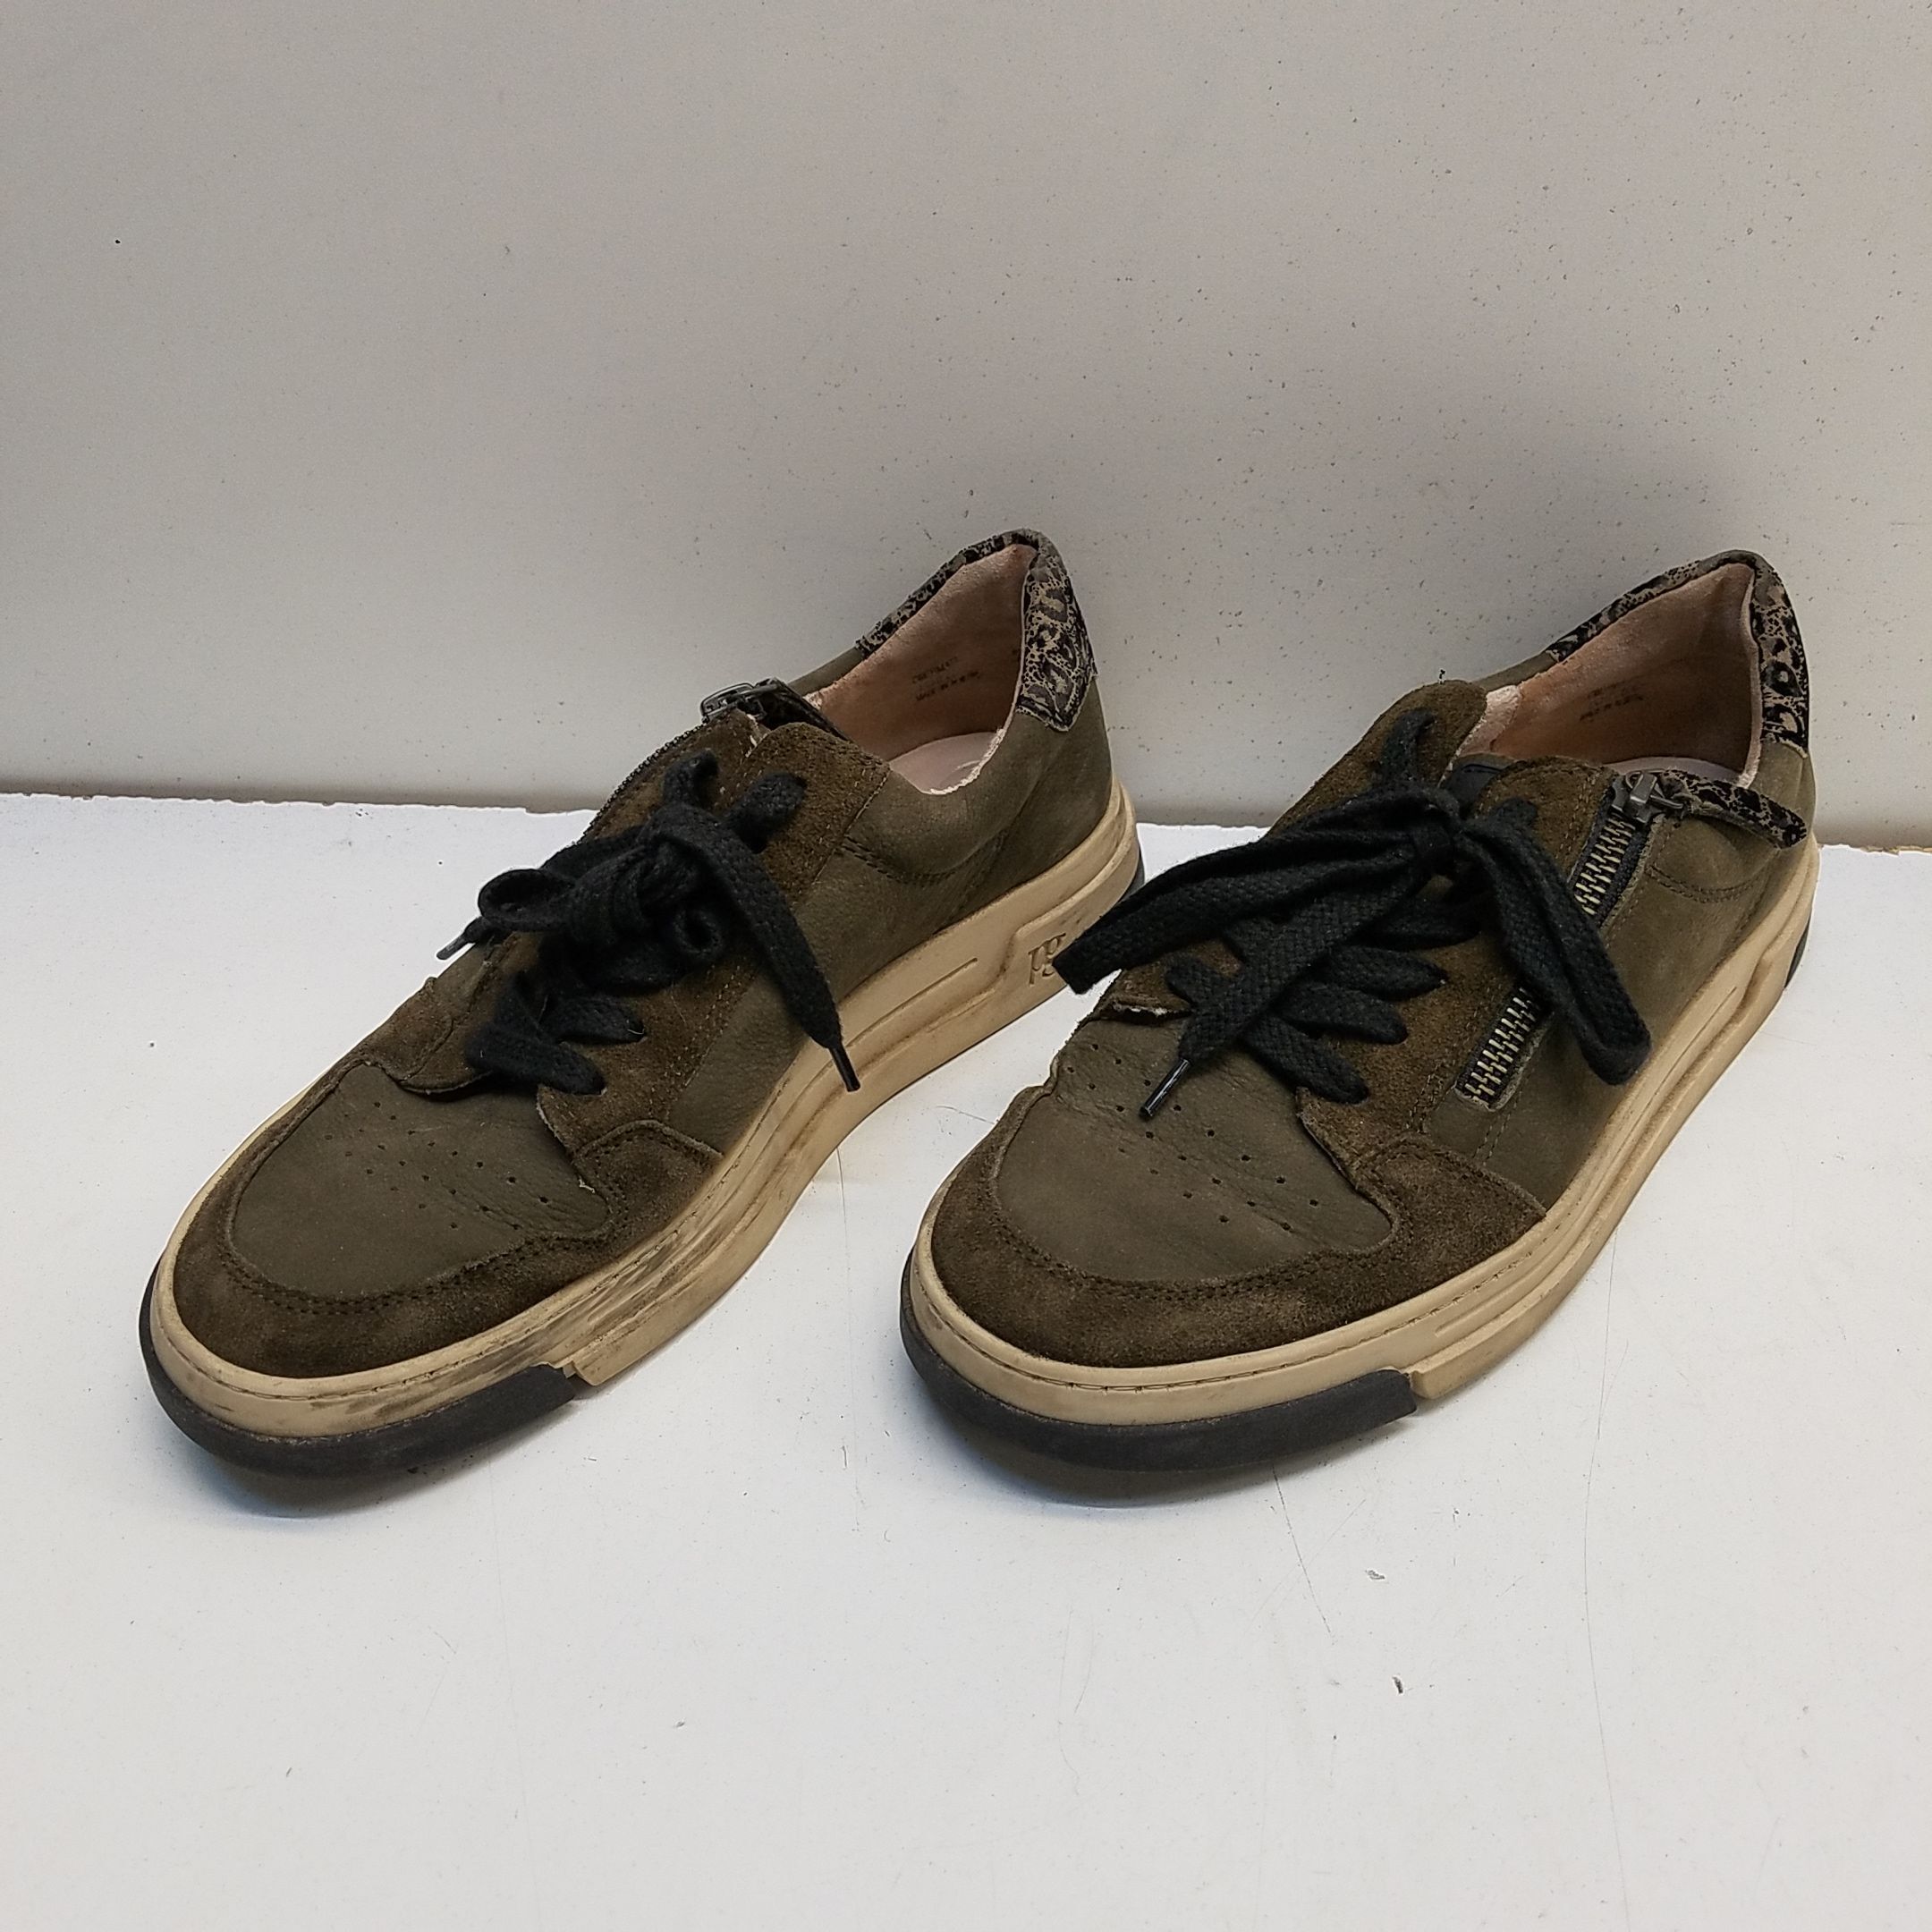 Paul green sneakers : r/Nordstrom1901